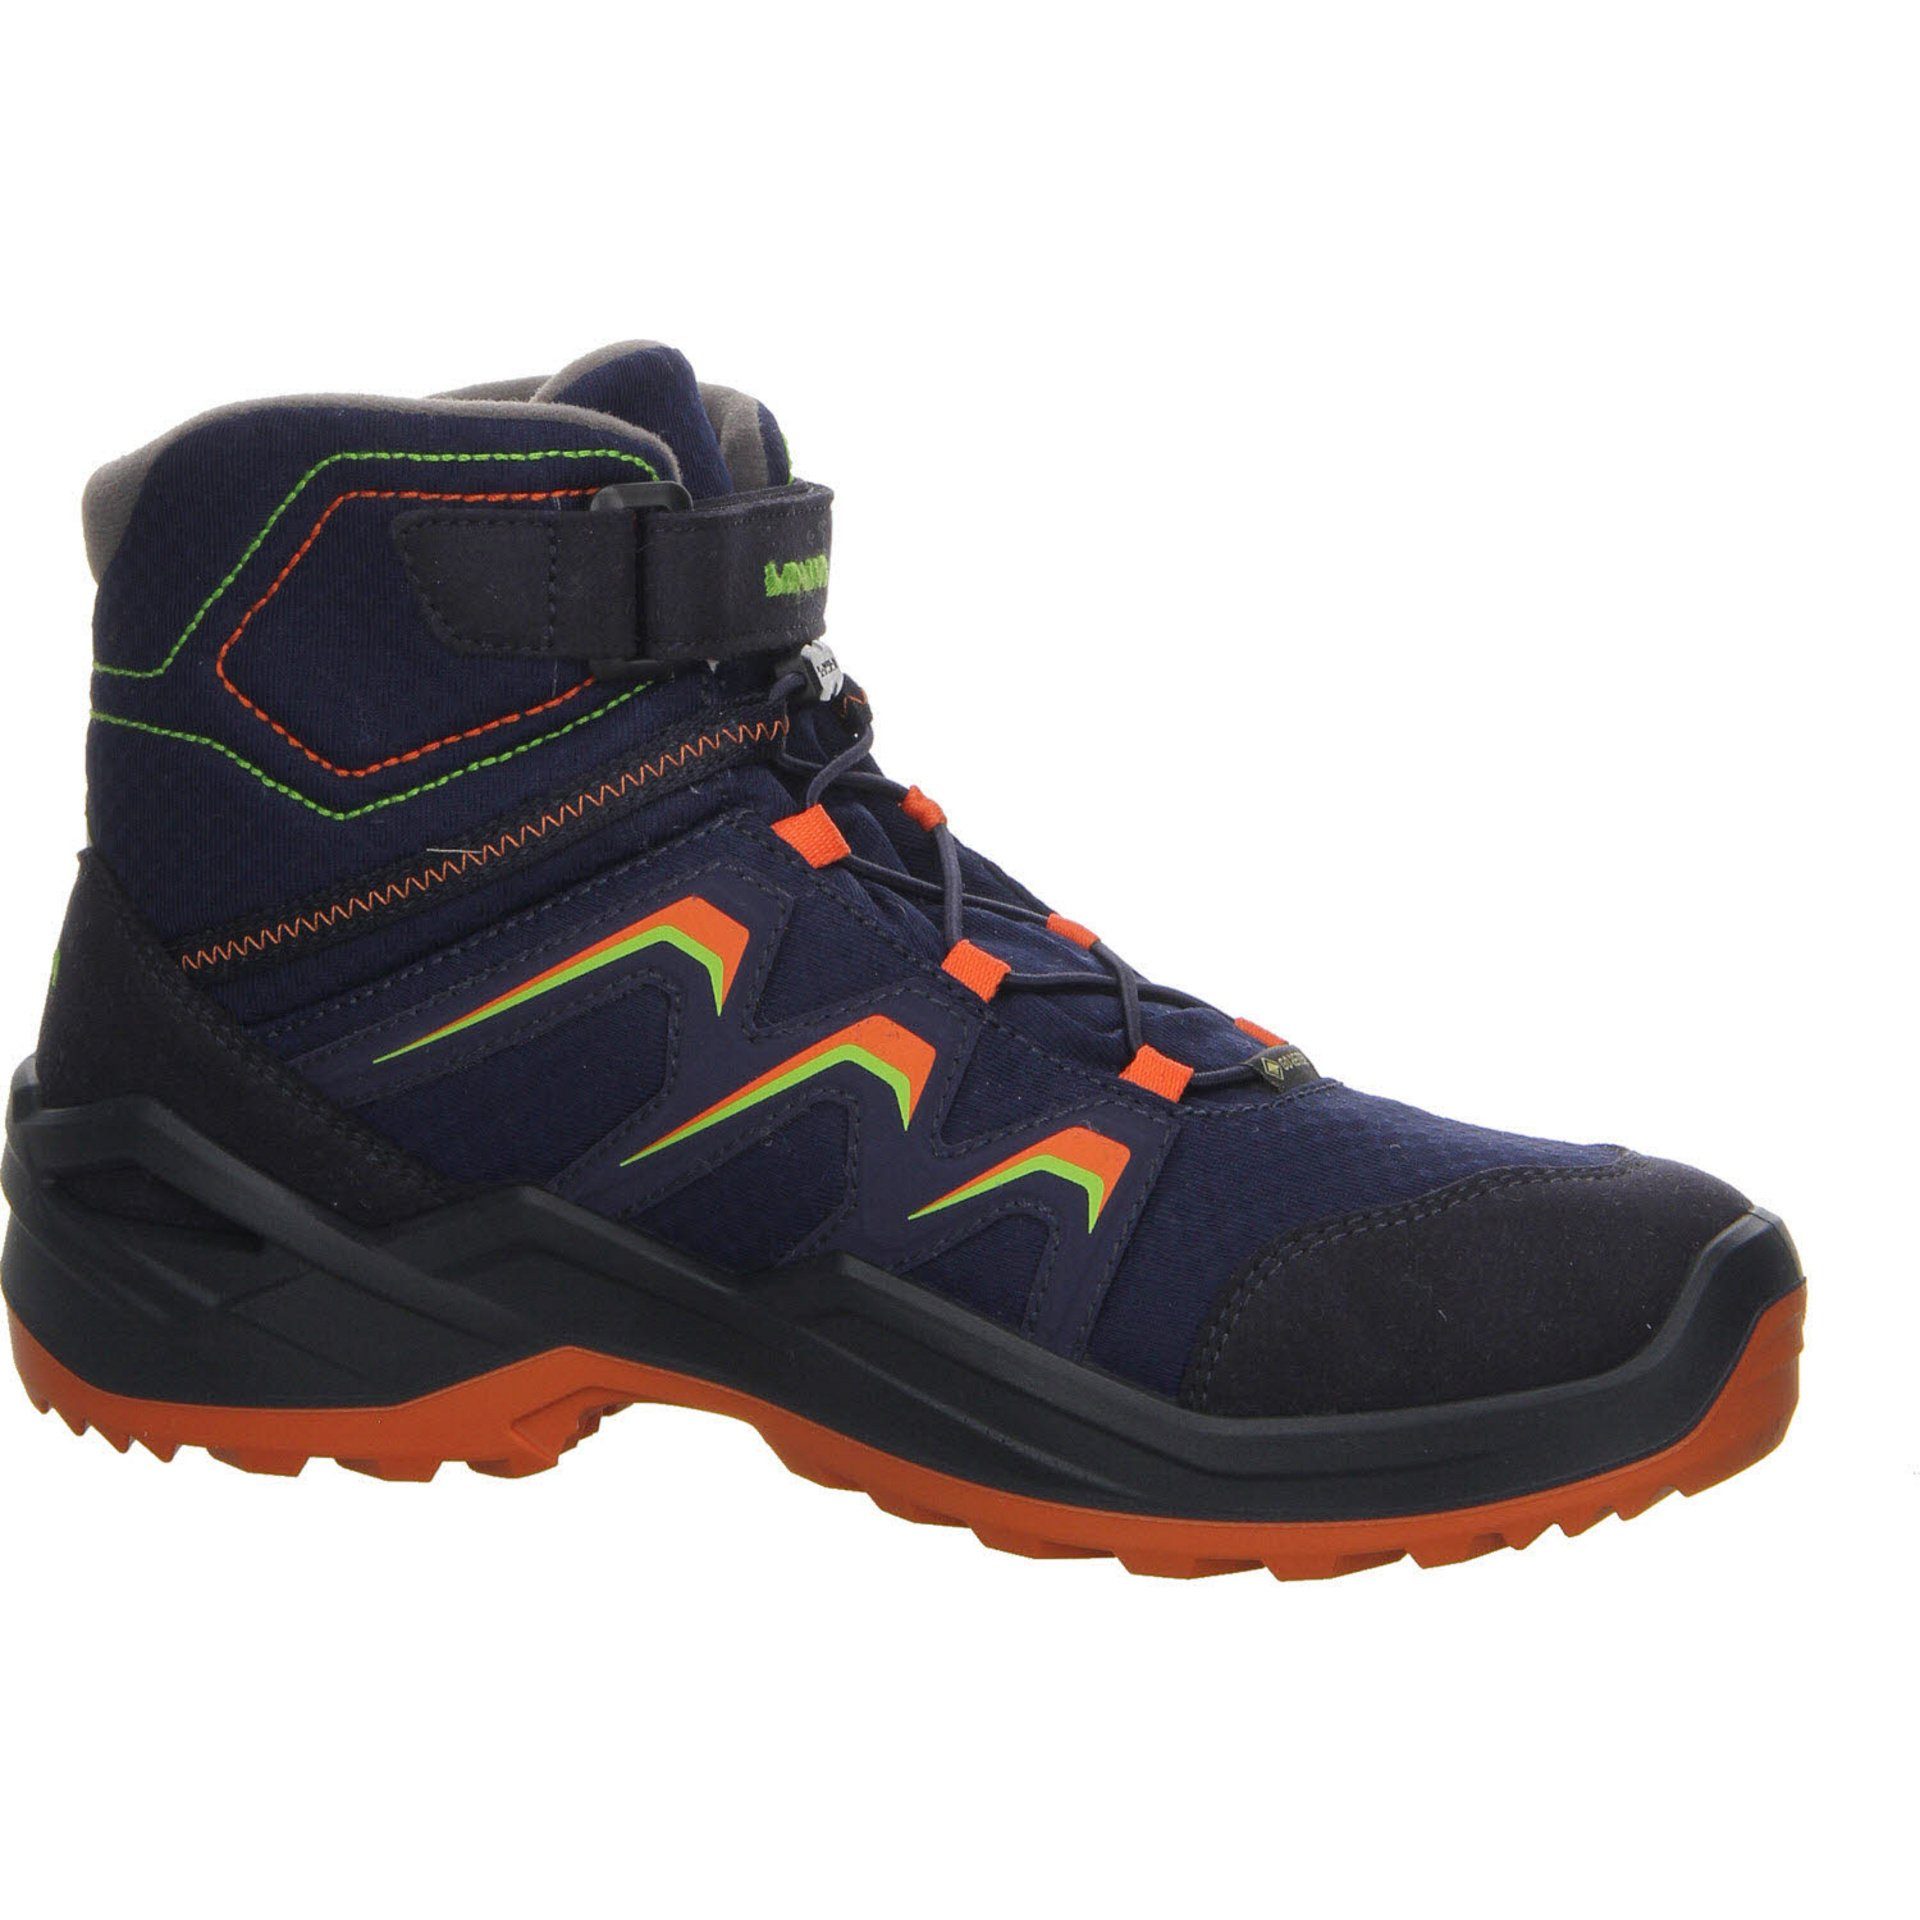 Boots Stiefel Textil GTX Jungen Stiefel Schuhe Lowa navy/orange Maddox Warm